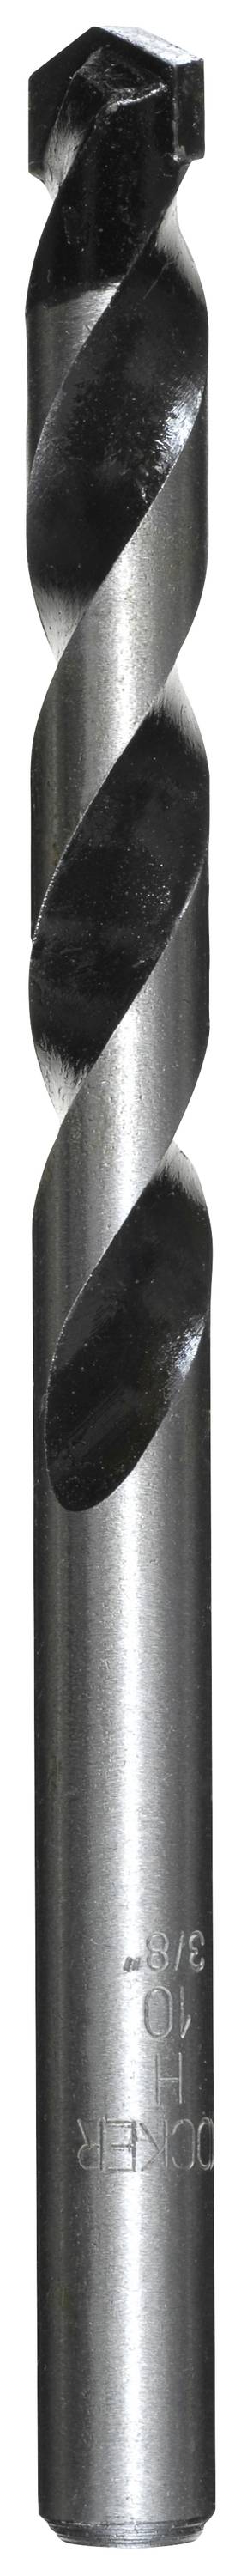 KWB 044700 Hartmetall Beton-Spiralbohrer 10 mm Gesamtlänge 120 mm Zylinderschaft 1 Stück (044700)